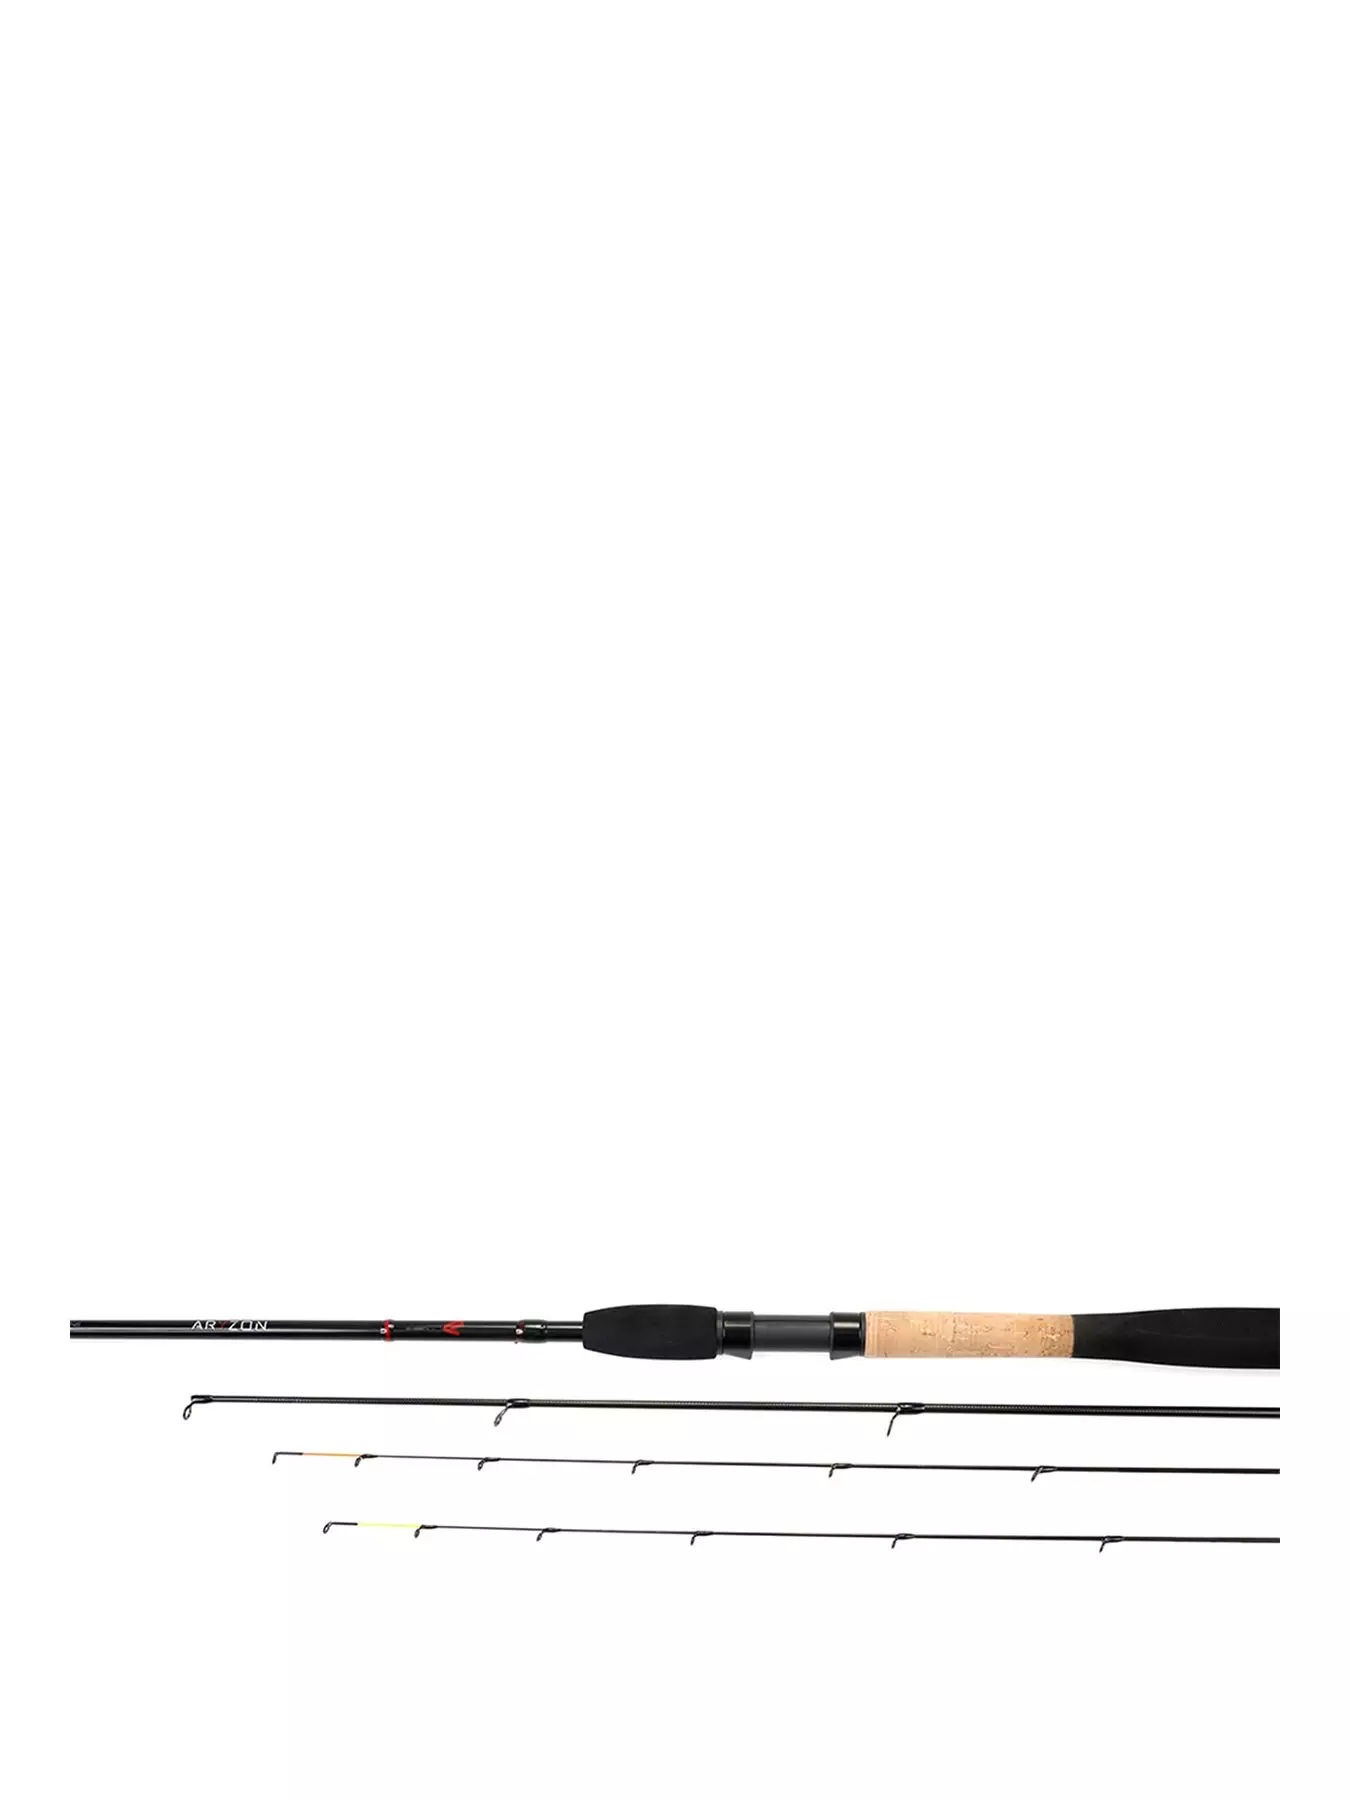 Nytro Aryzon 10 Foot Carp Feeder Fishing Rod